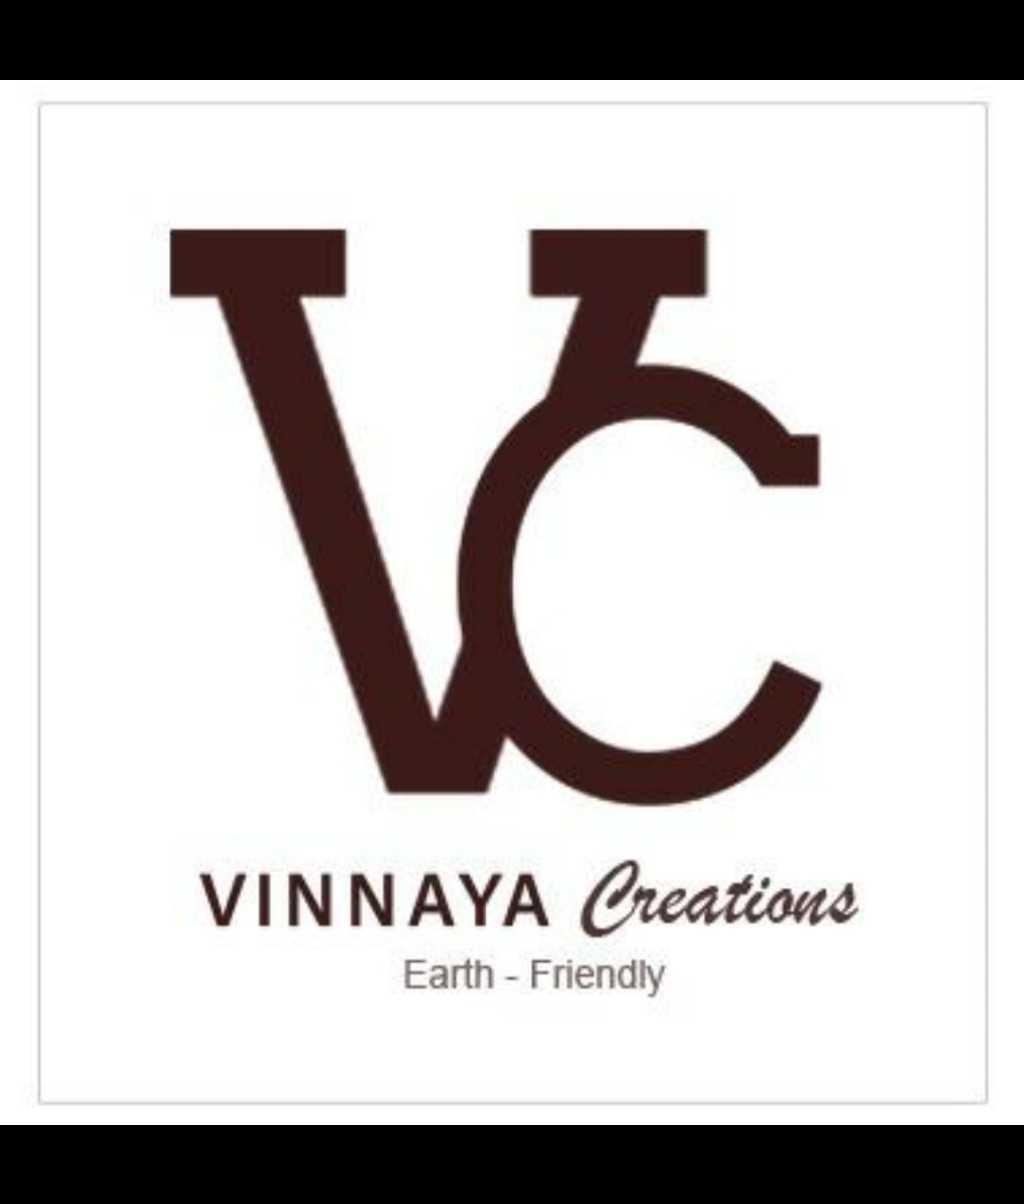 Vinnaya Creations